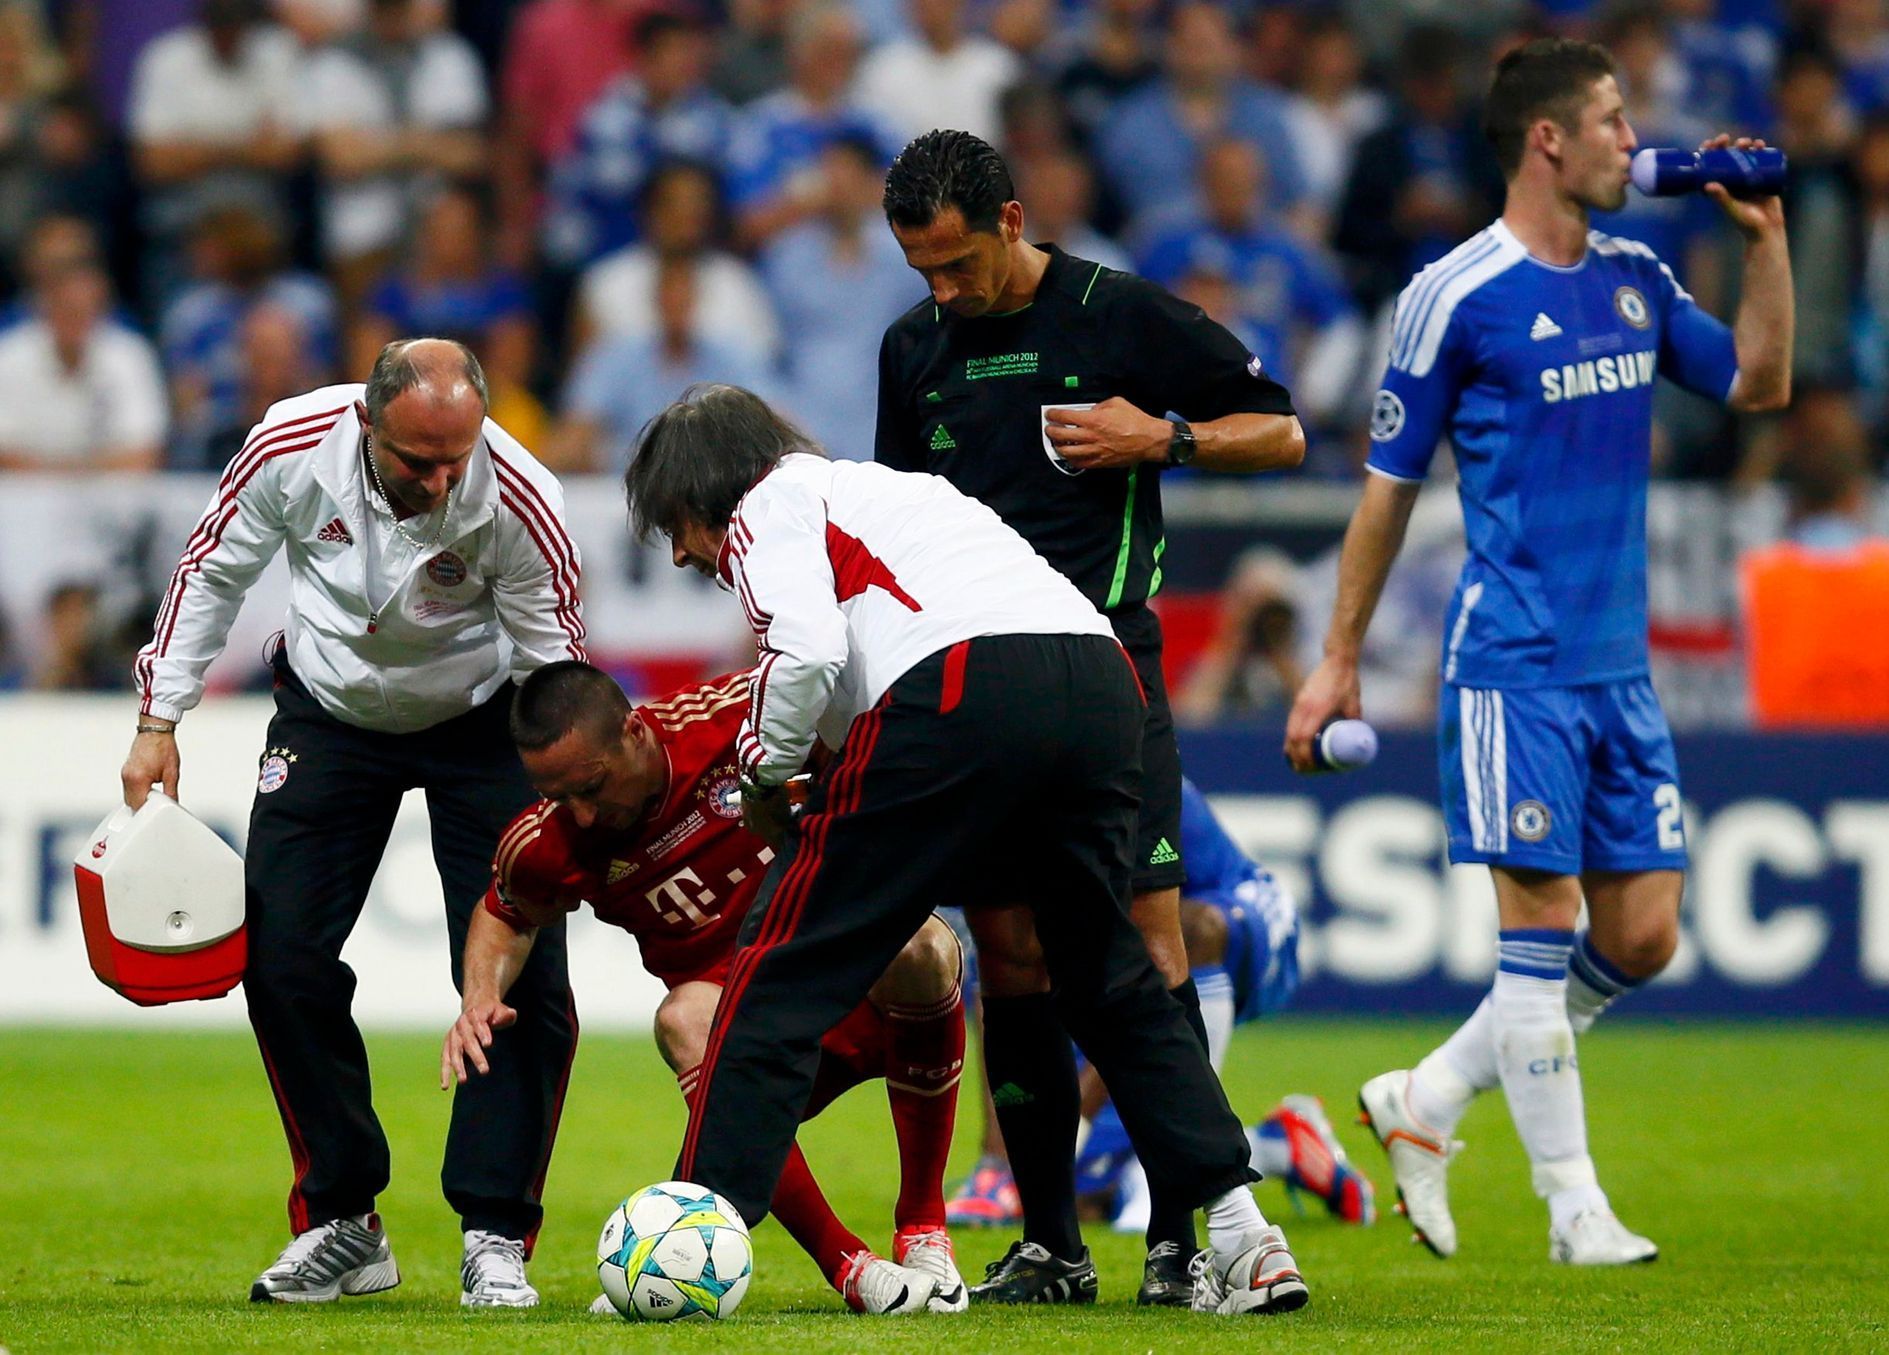 Zraněný Ribéry ve finále Ligy mistrů Bayern - Chelsea